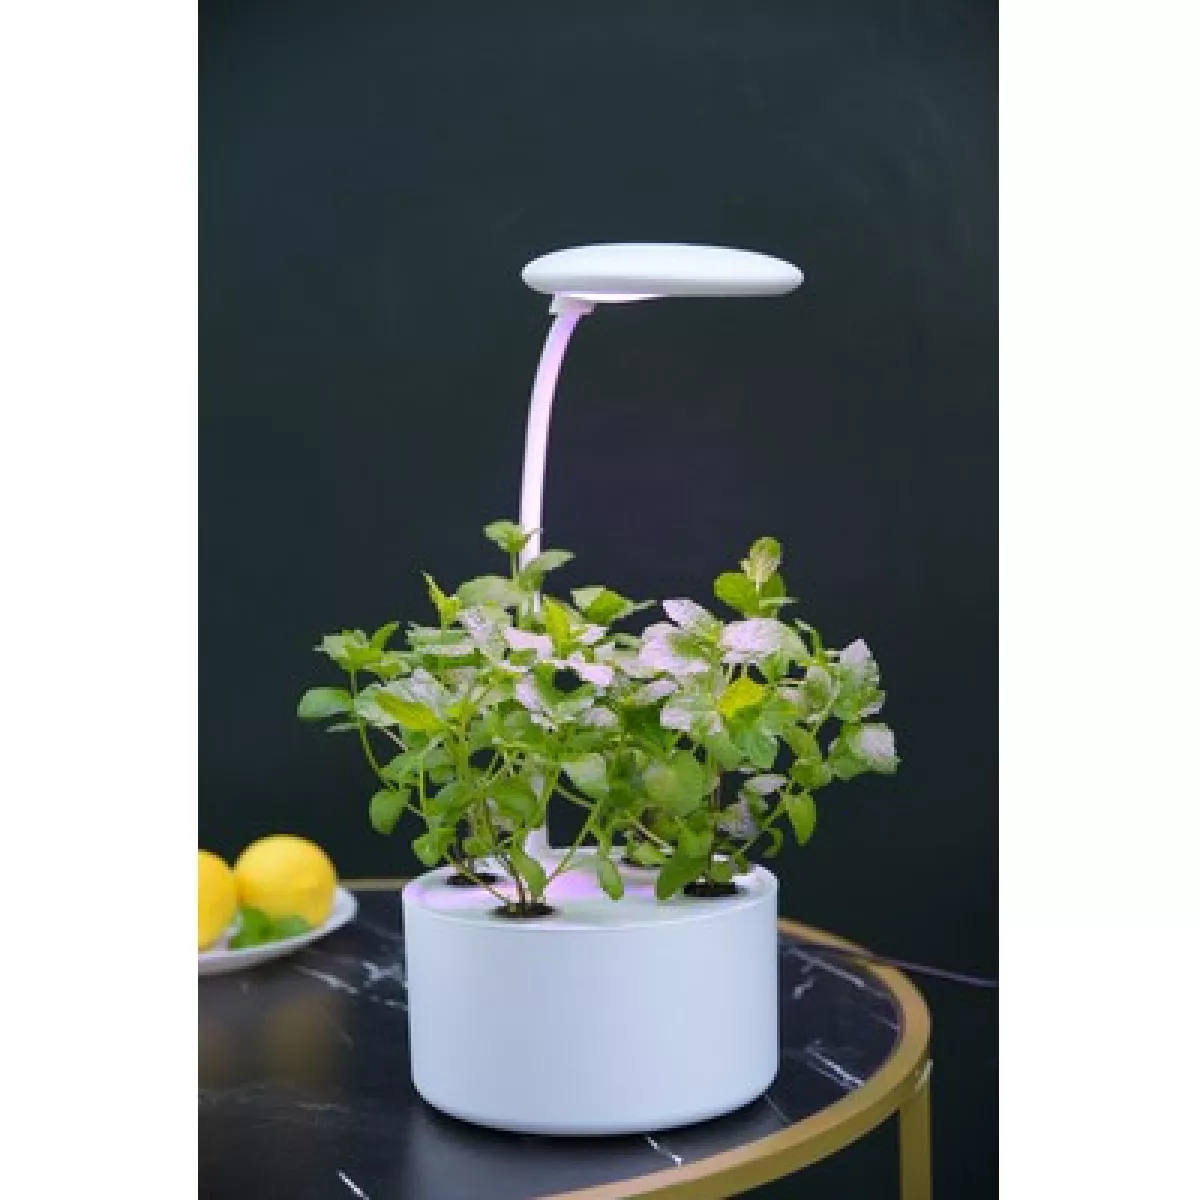 #3 - LEDlife hydroponisk mini køkkenhave - Hvid, inkl. vækstlys, 6 pladser, indbygget timer, 1,8L vandtank